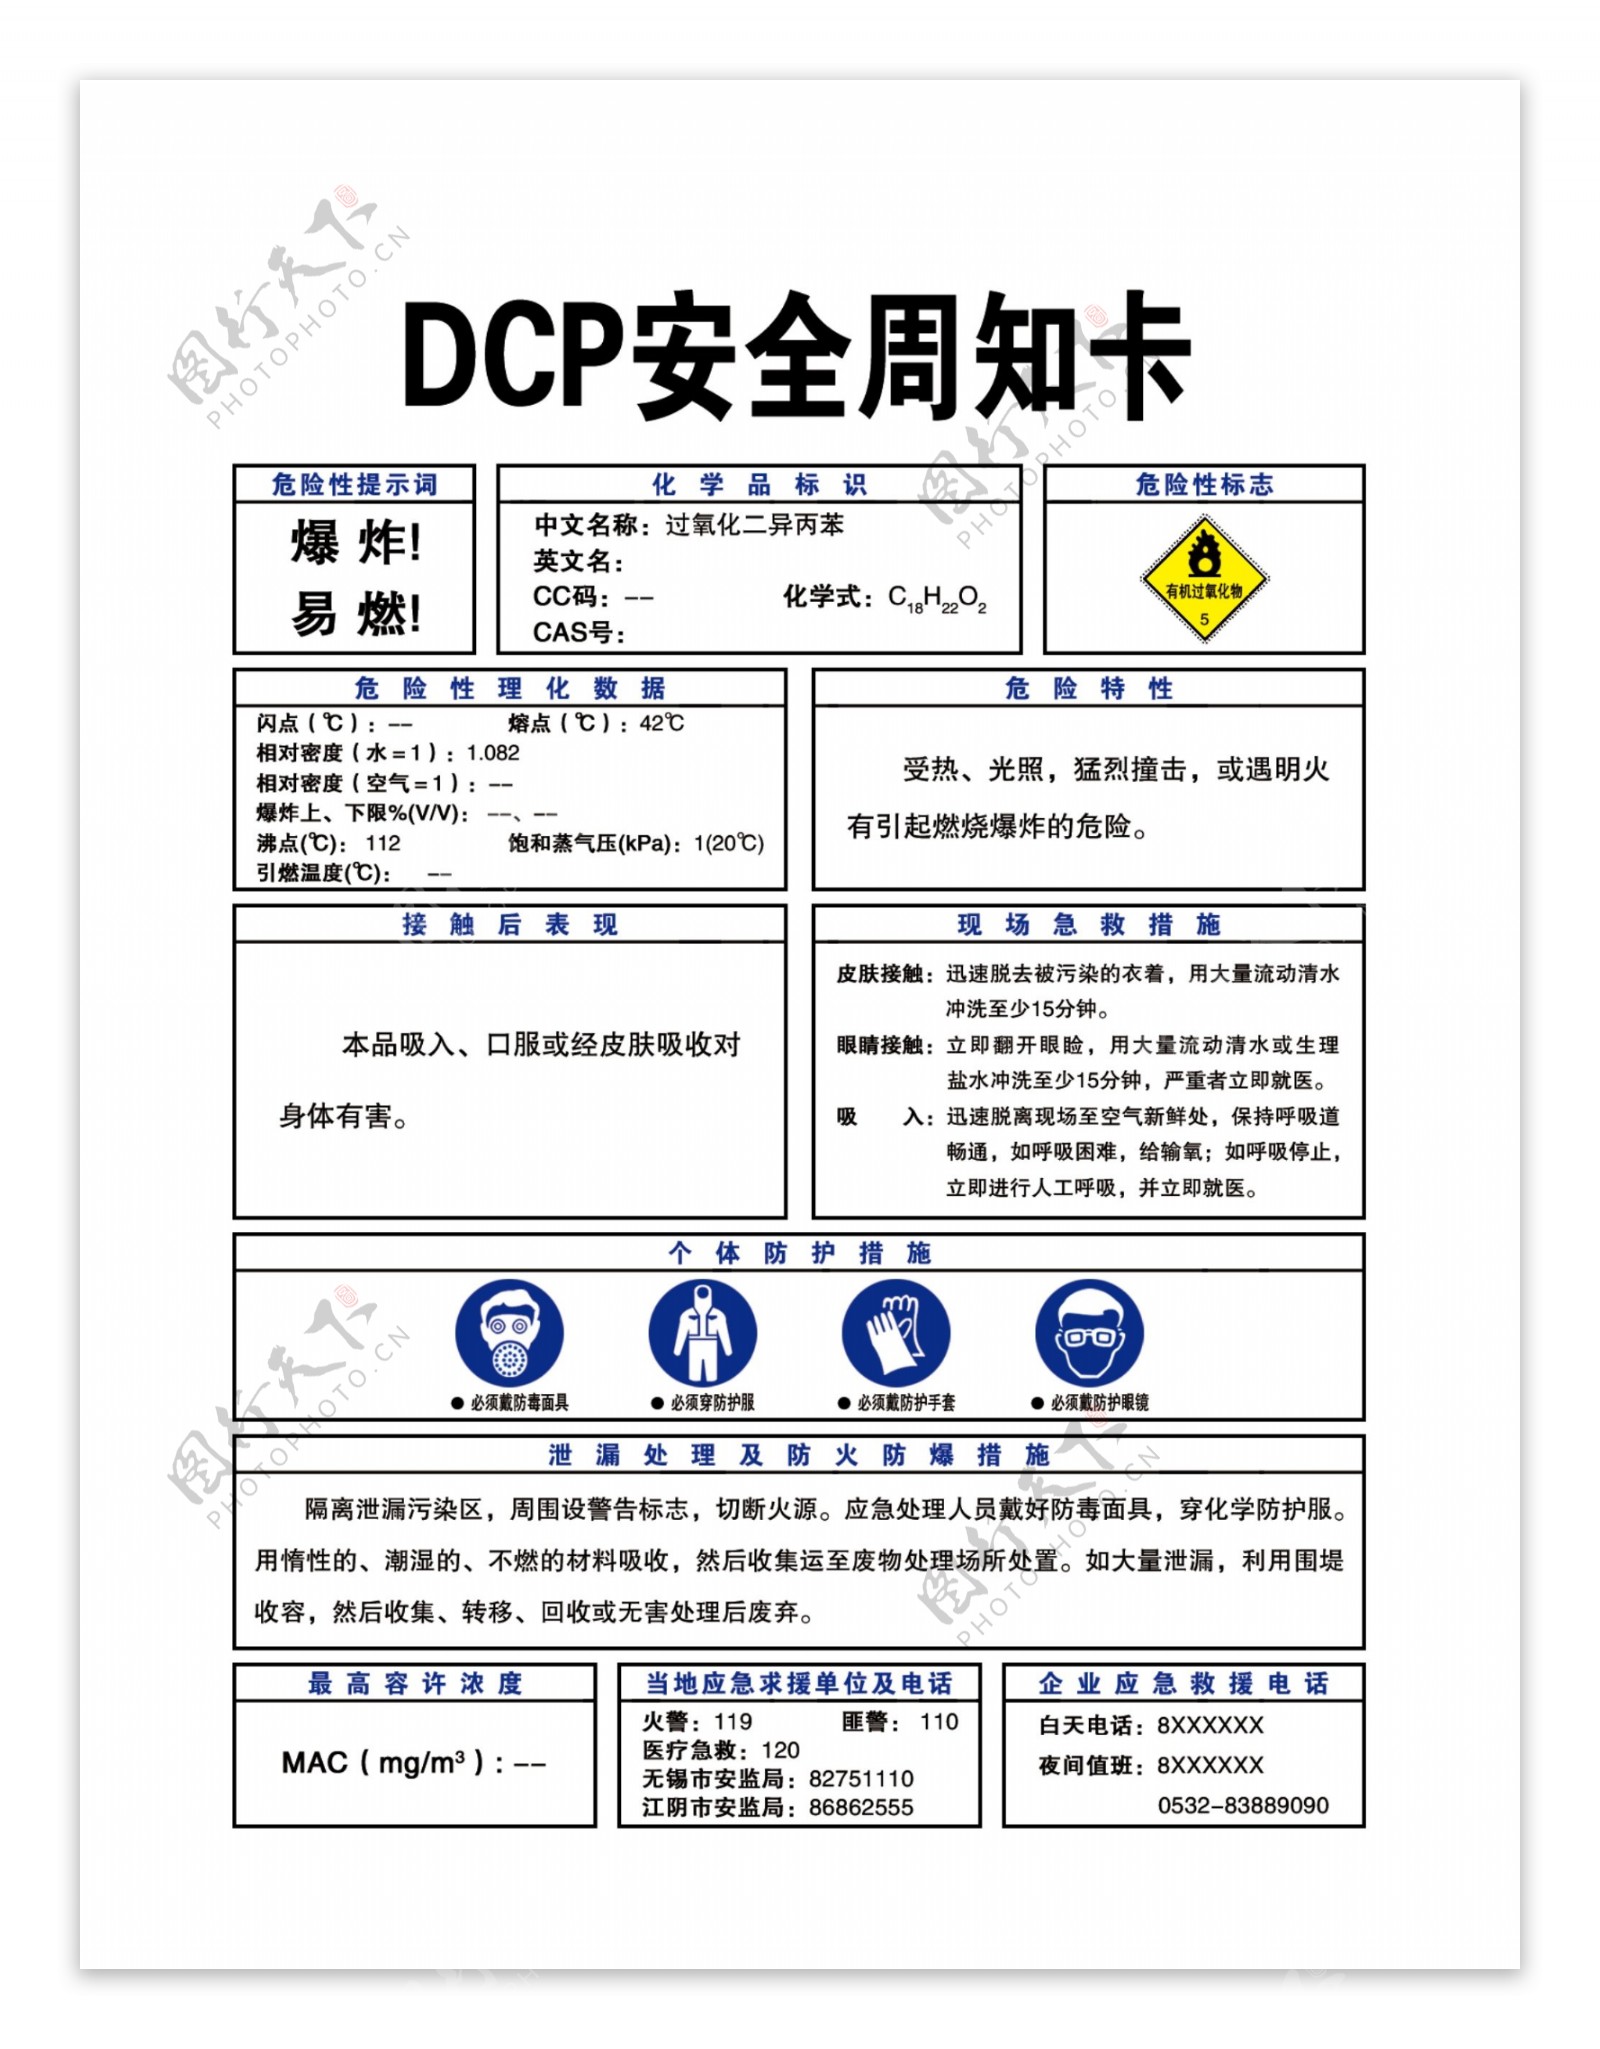 DCP安全周知卡图片